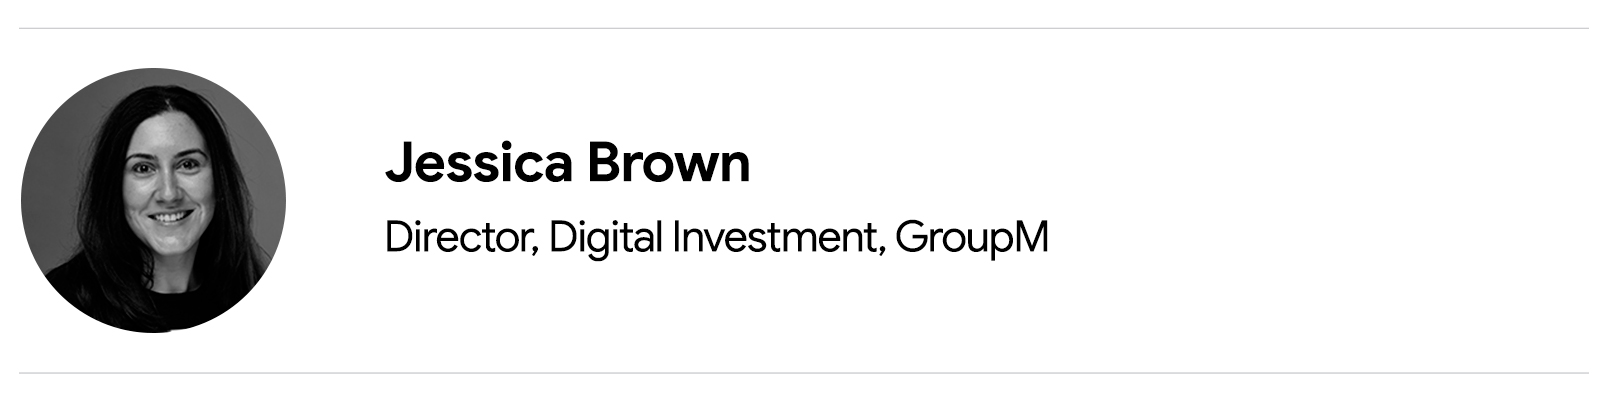 Una fotografía en blanco y negro de Jessica Brown, Directora de Inversiones Digitales, GroupM, una mujer blanca con cabello largo y oscuro.